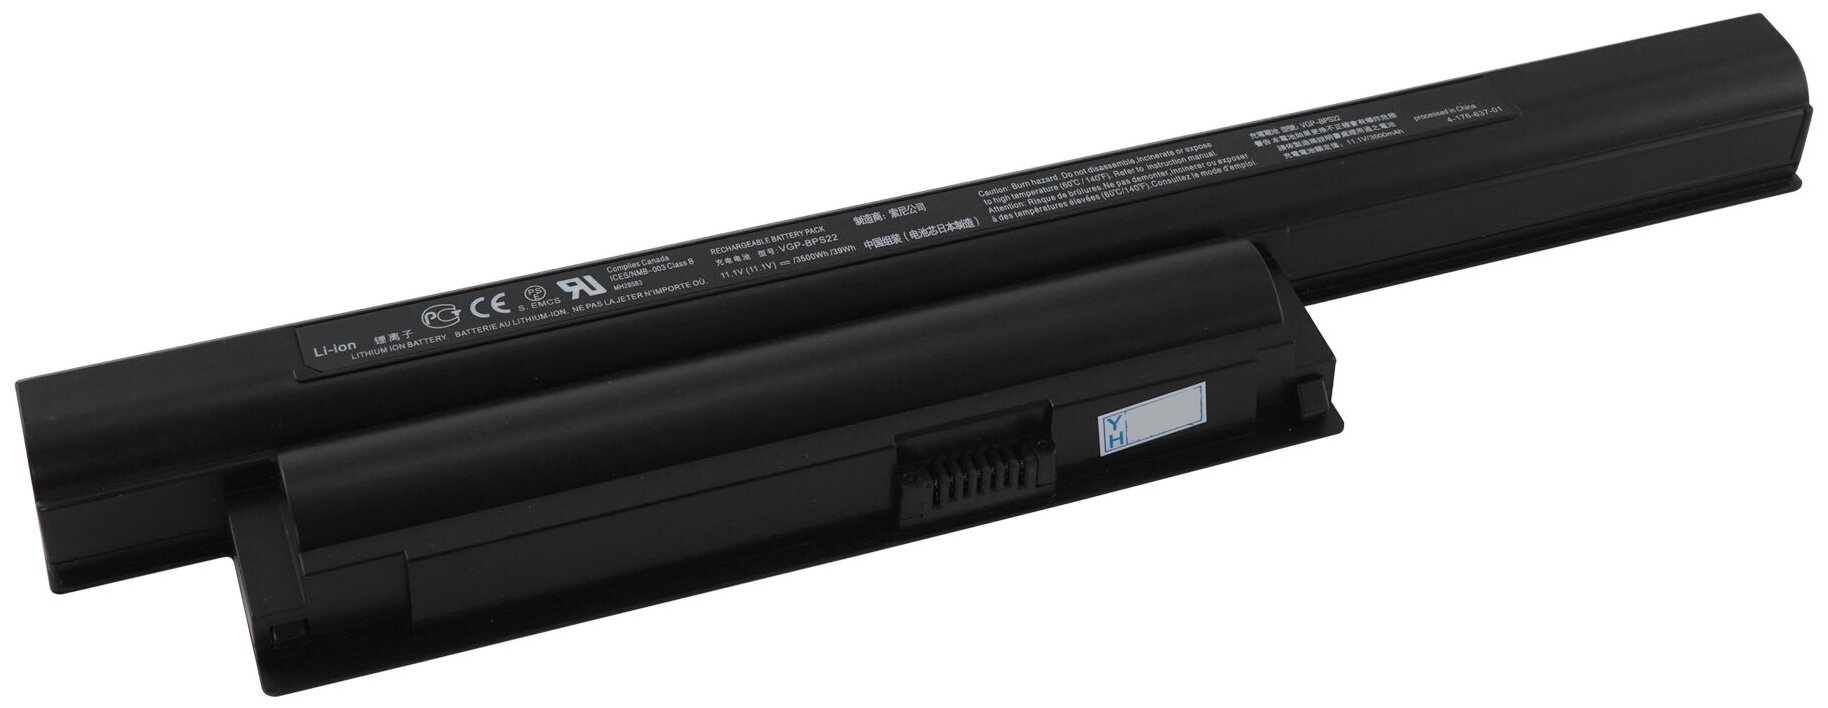 Аккумулятор BPS22 для Sony Vaio VPC-EA / VPC-EB / VPC-EC (VGP-BPL22)